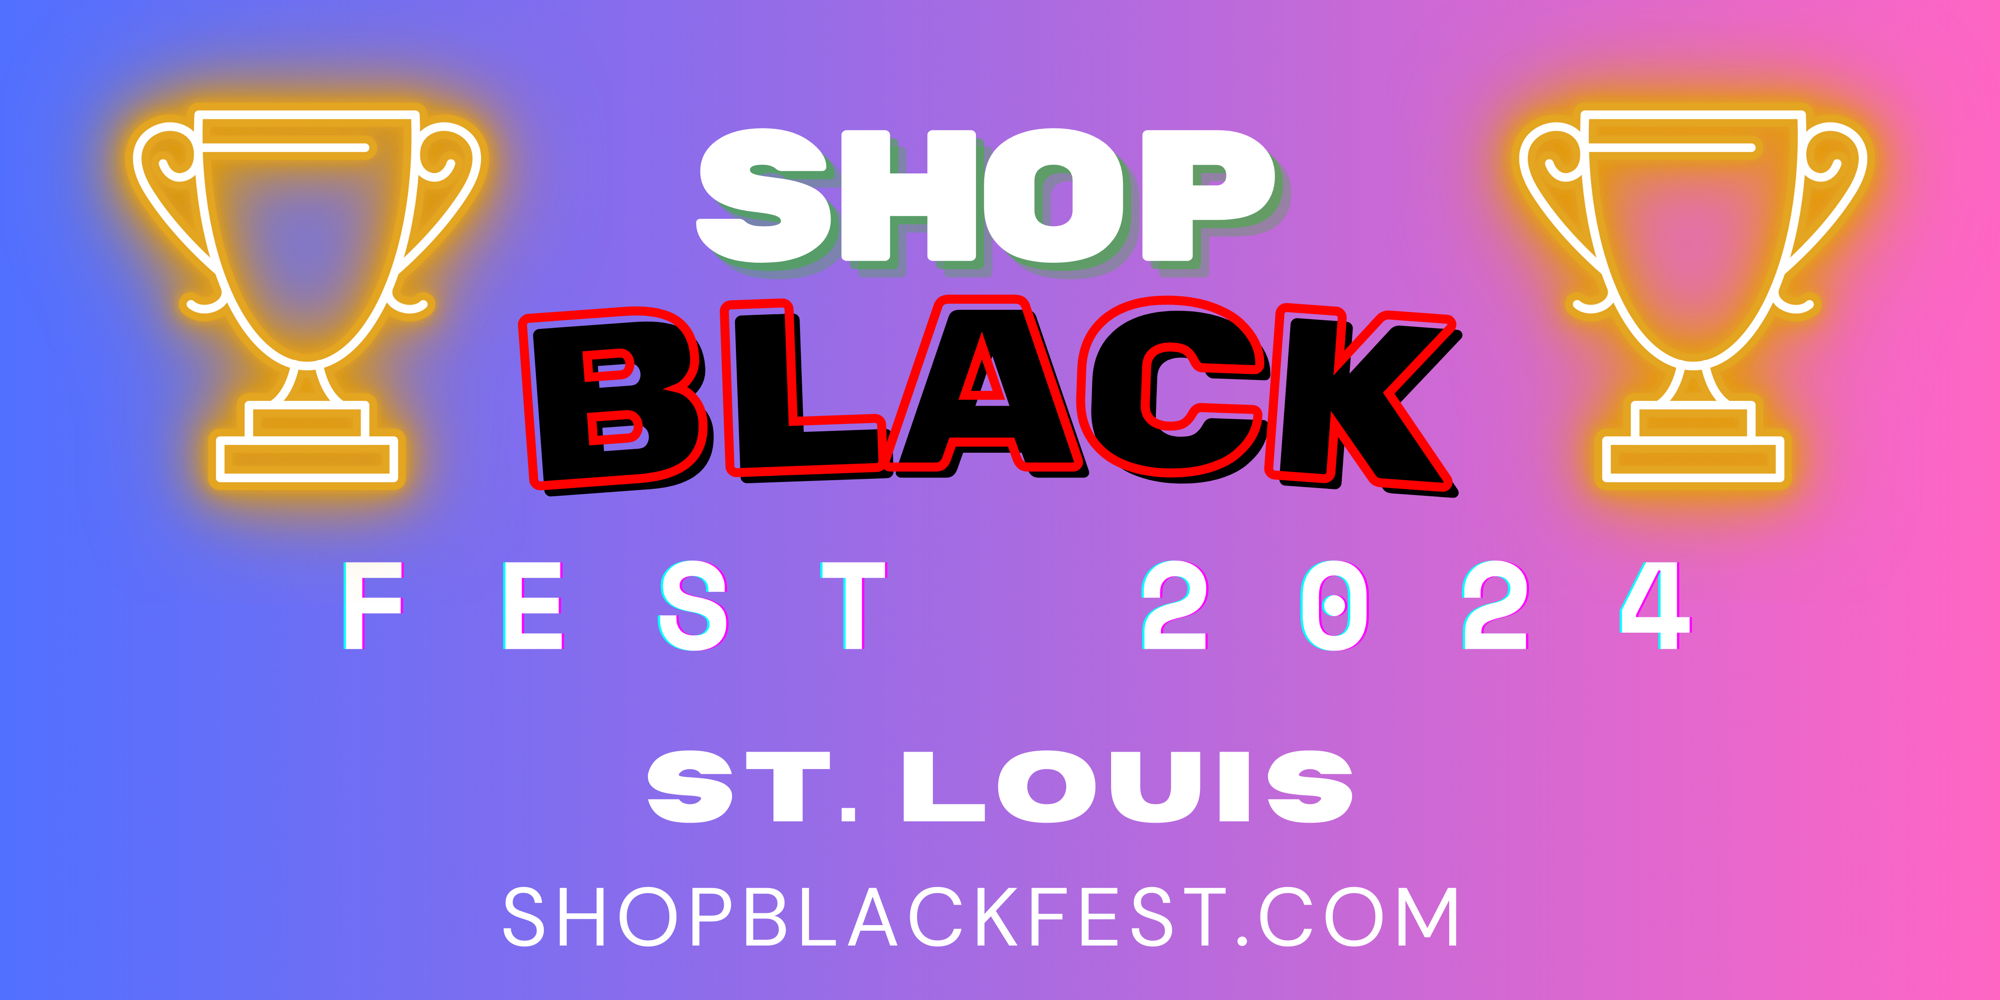 Shop Black Fest - St. Louis promotional image